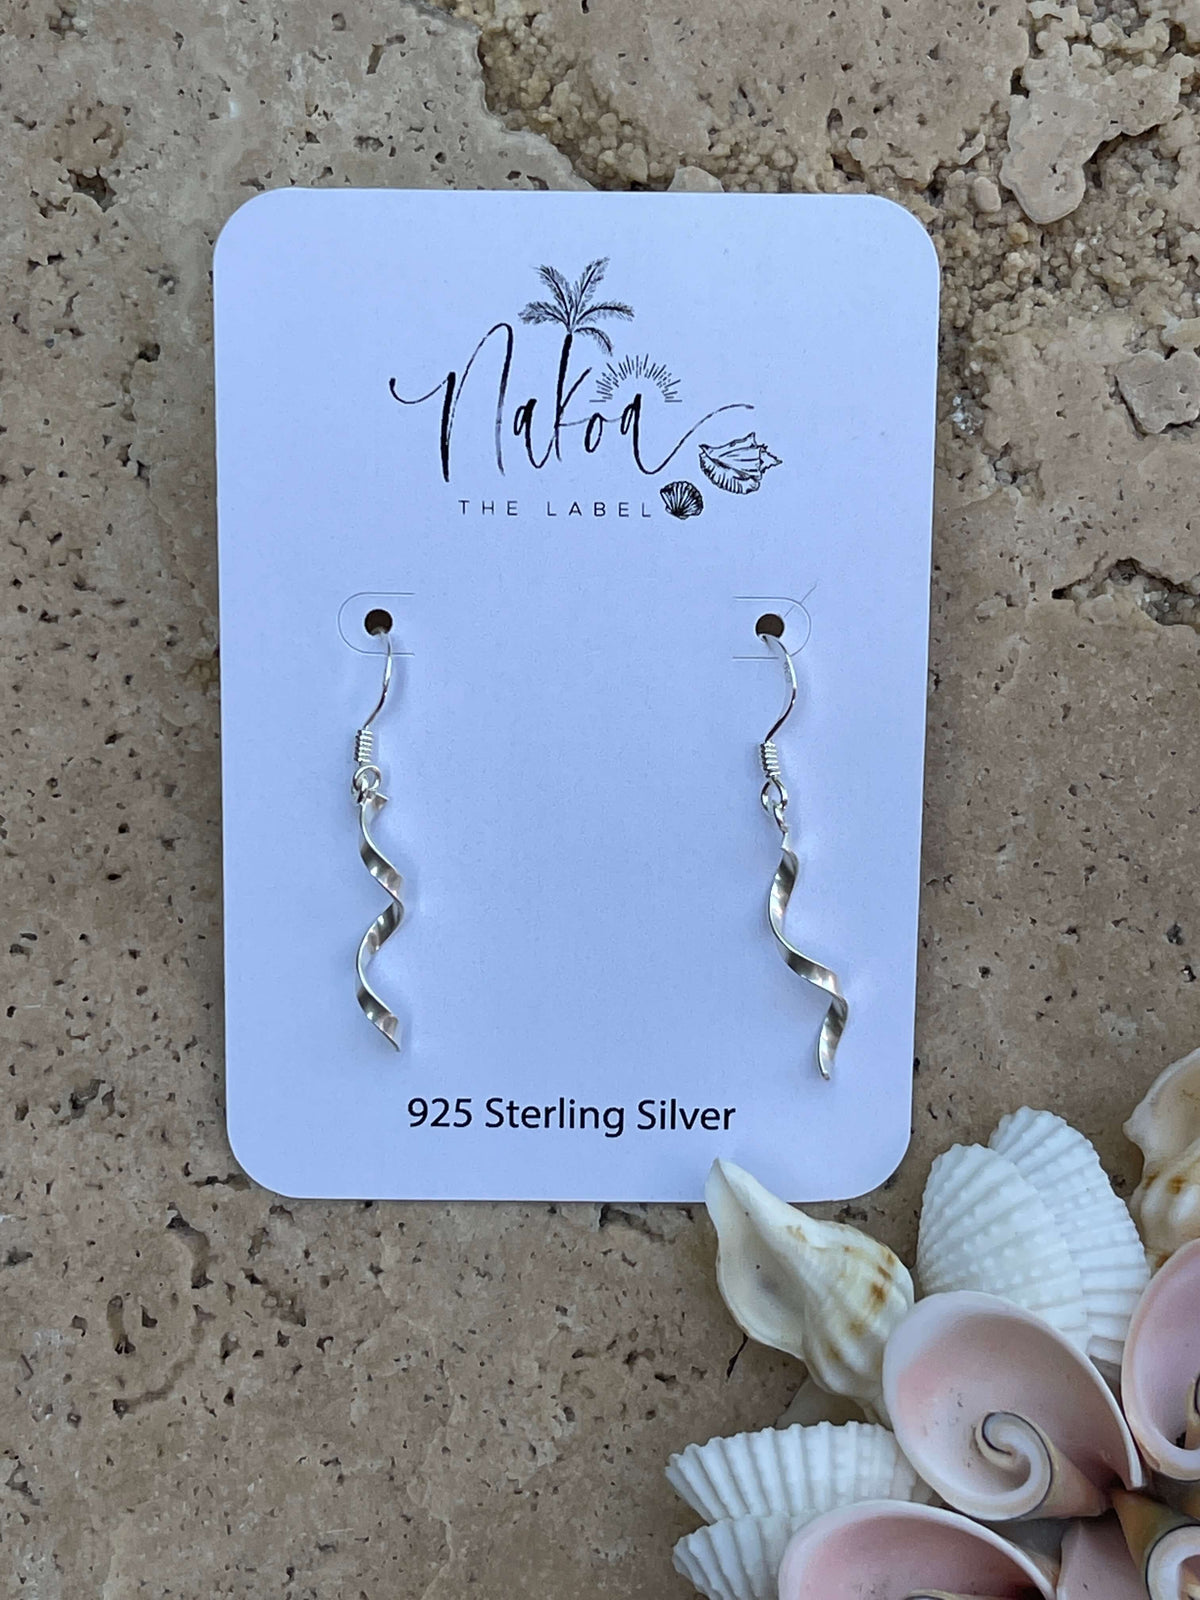 Silver Twist Hook Earrings